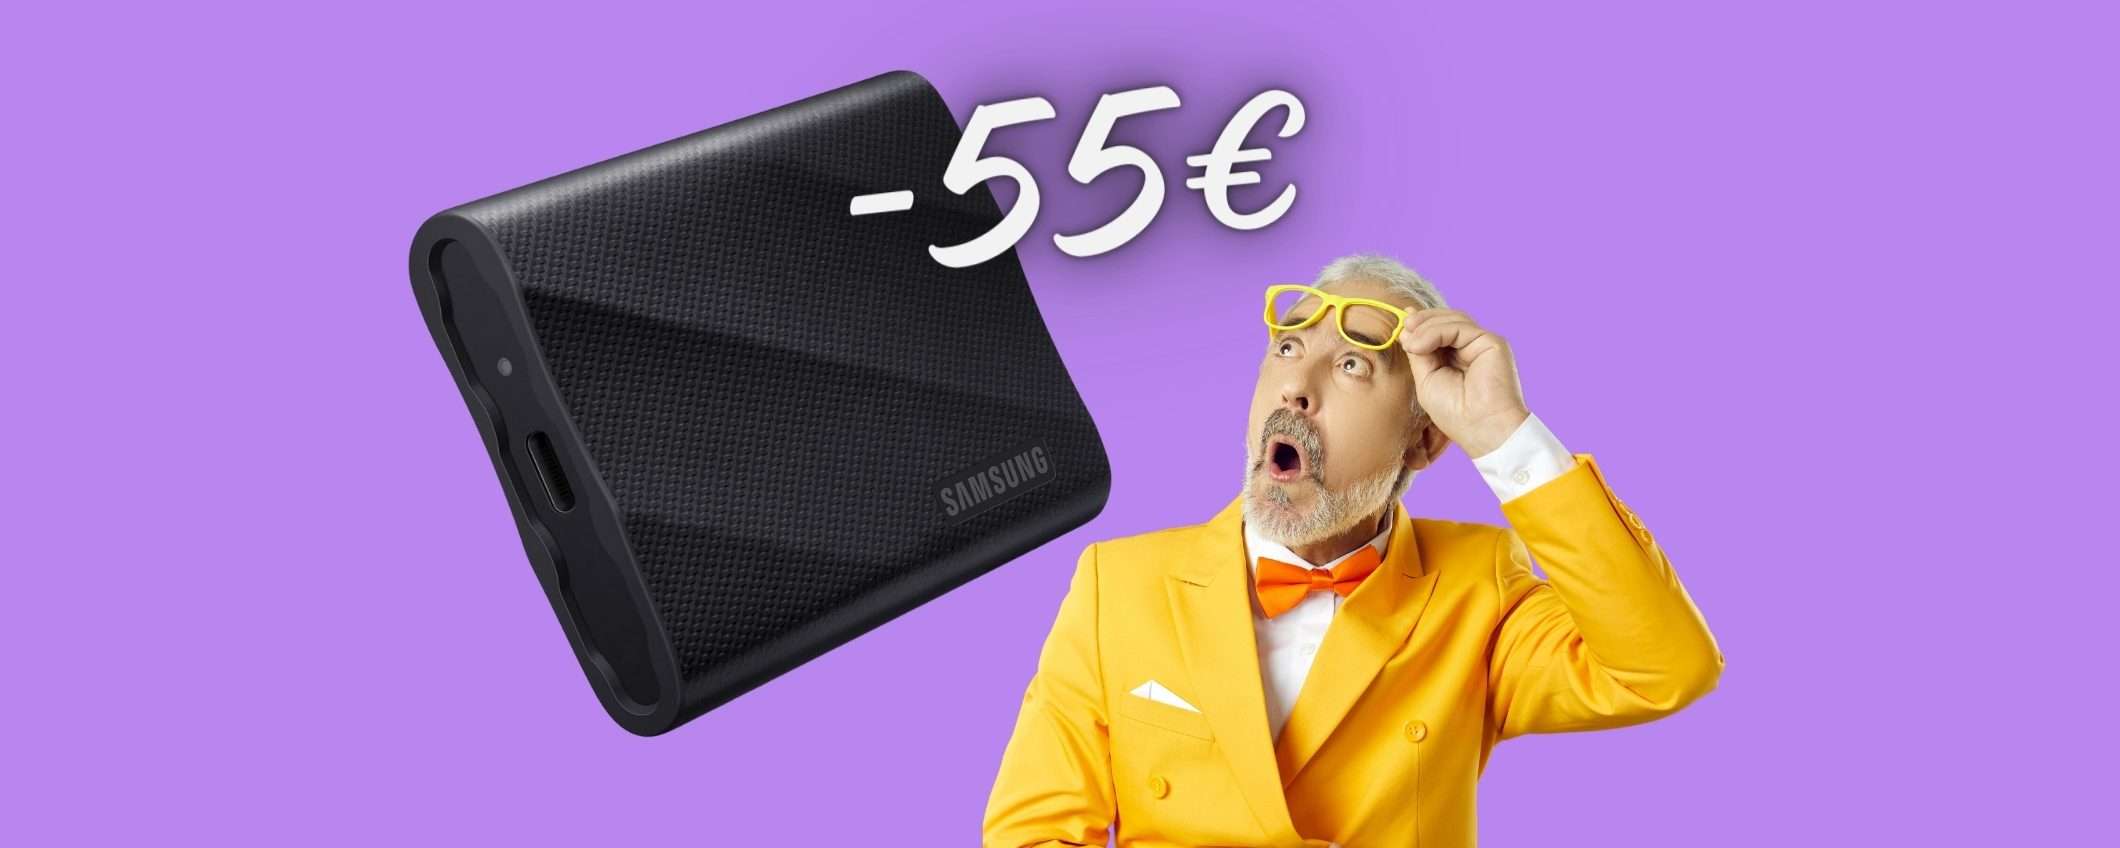 L'EPICO SSD portatile Samsung T9 da 1TB in SCONTO di 55€ su eBay